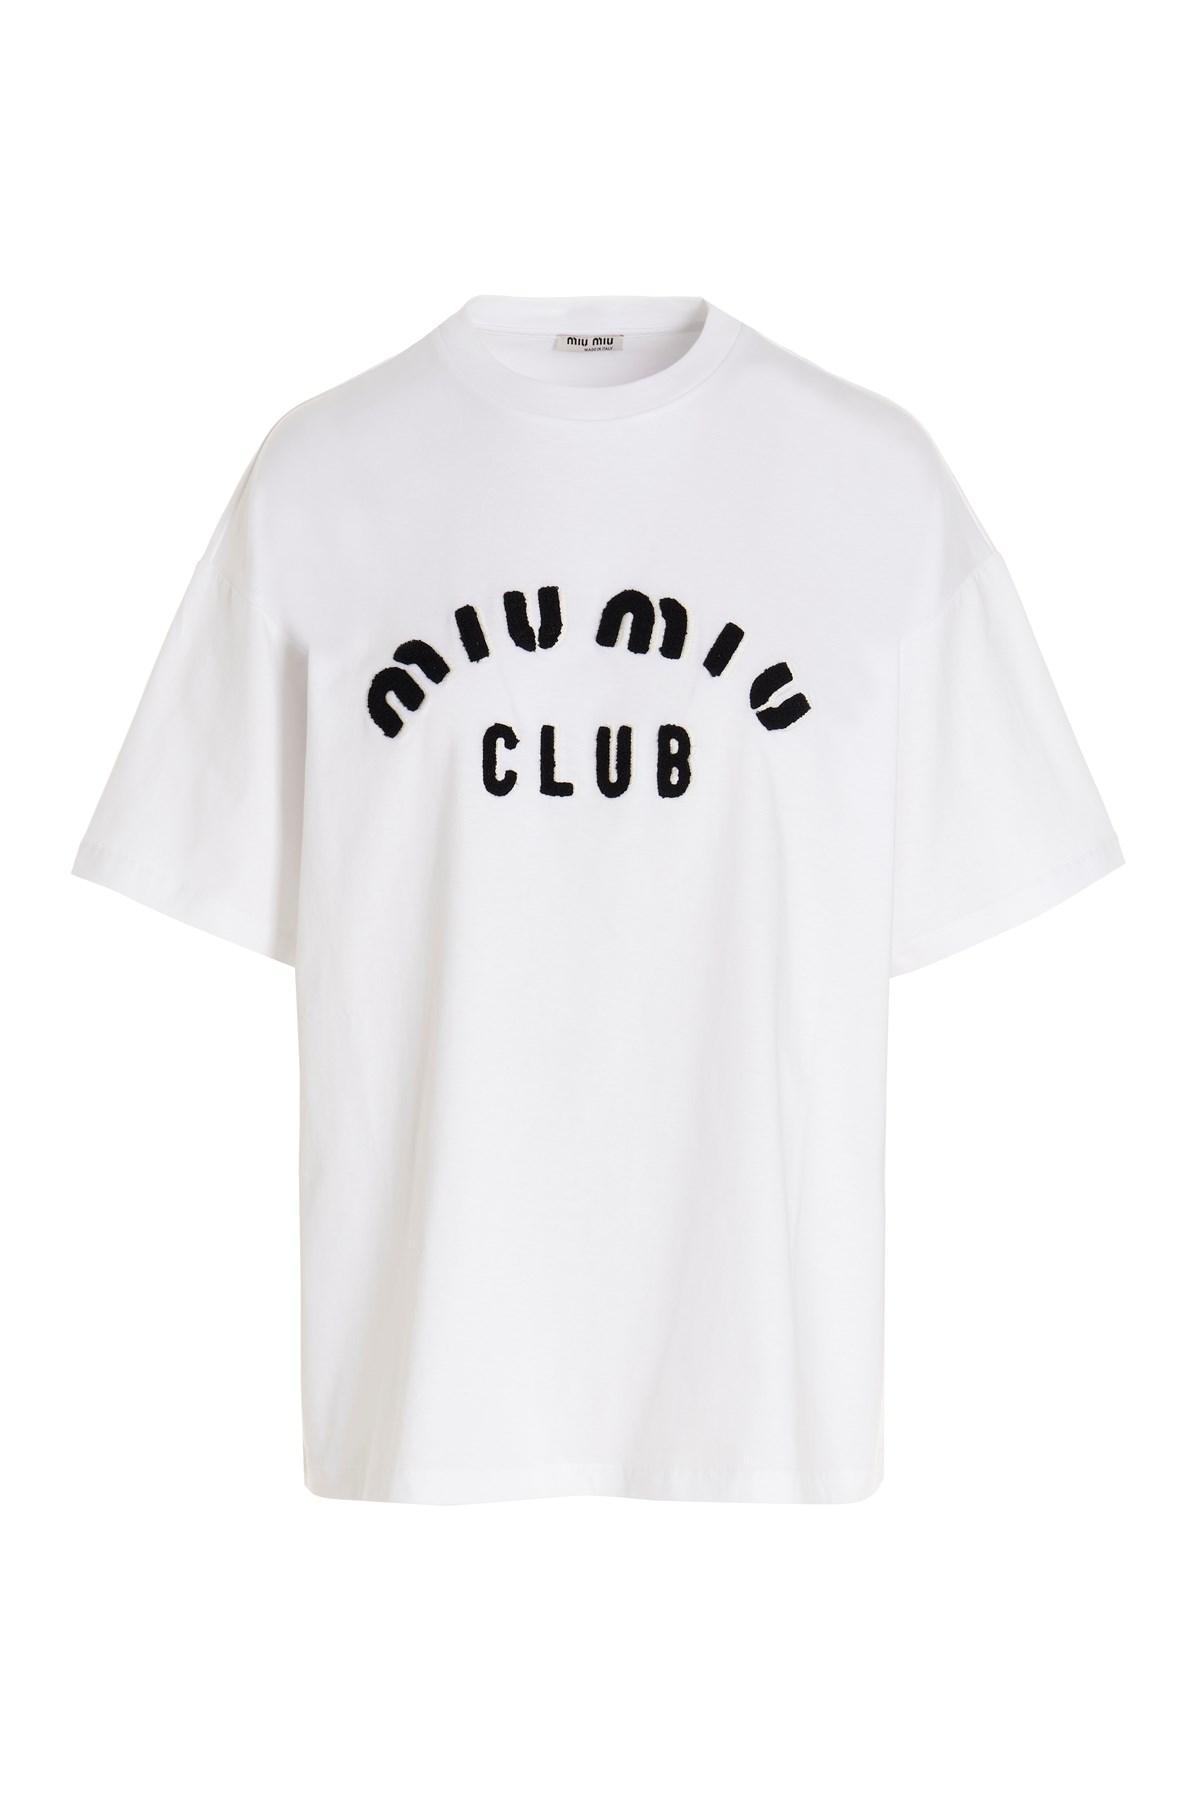 MIU MIU T-Shirt 'Miu Miu Club'